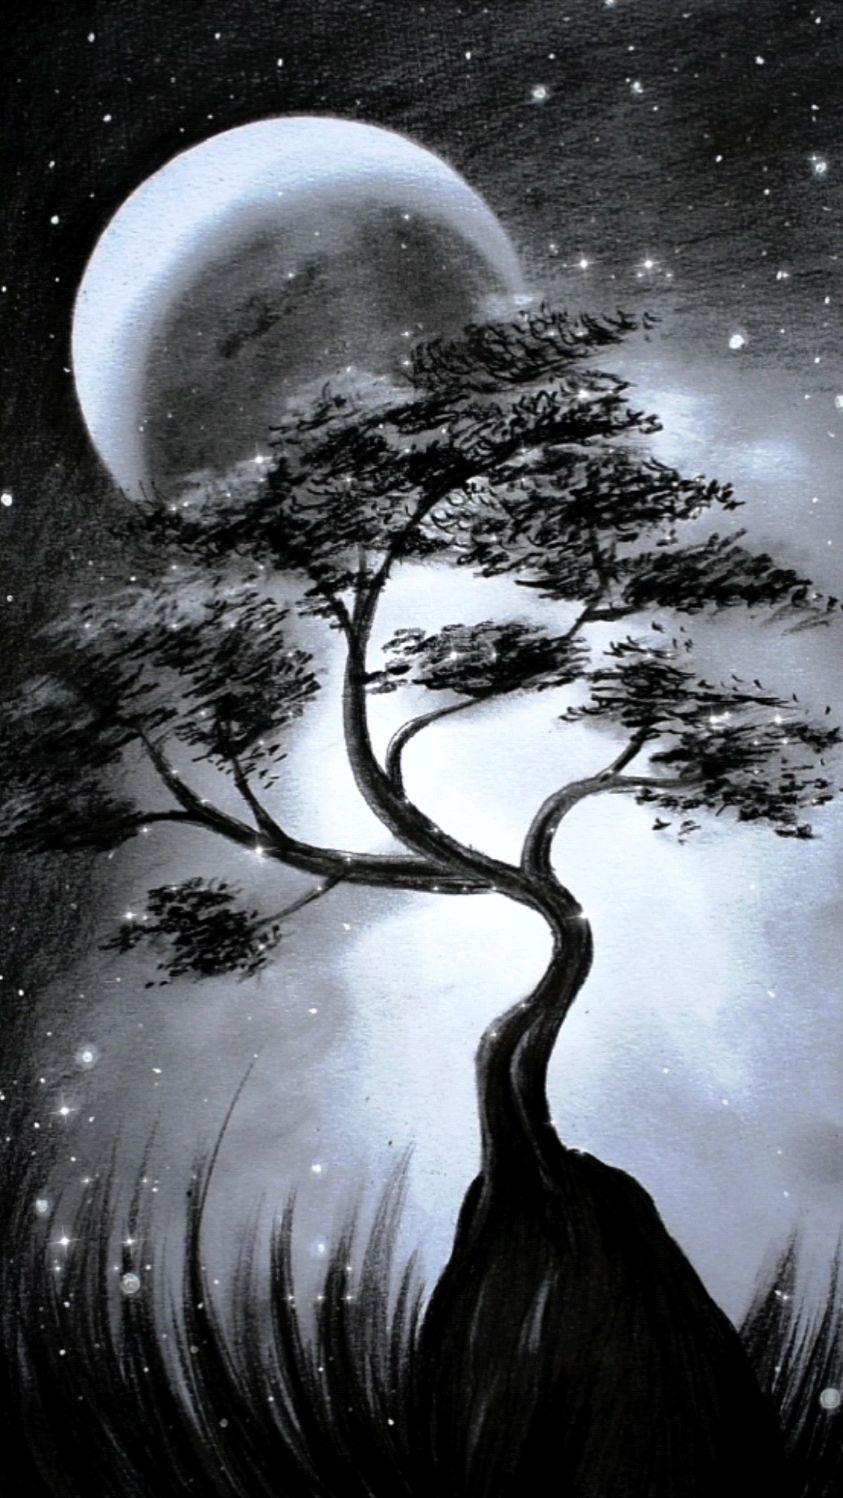 治愈心灵的素描,月光下树影摇曳;夜空中繁星璀璨